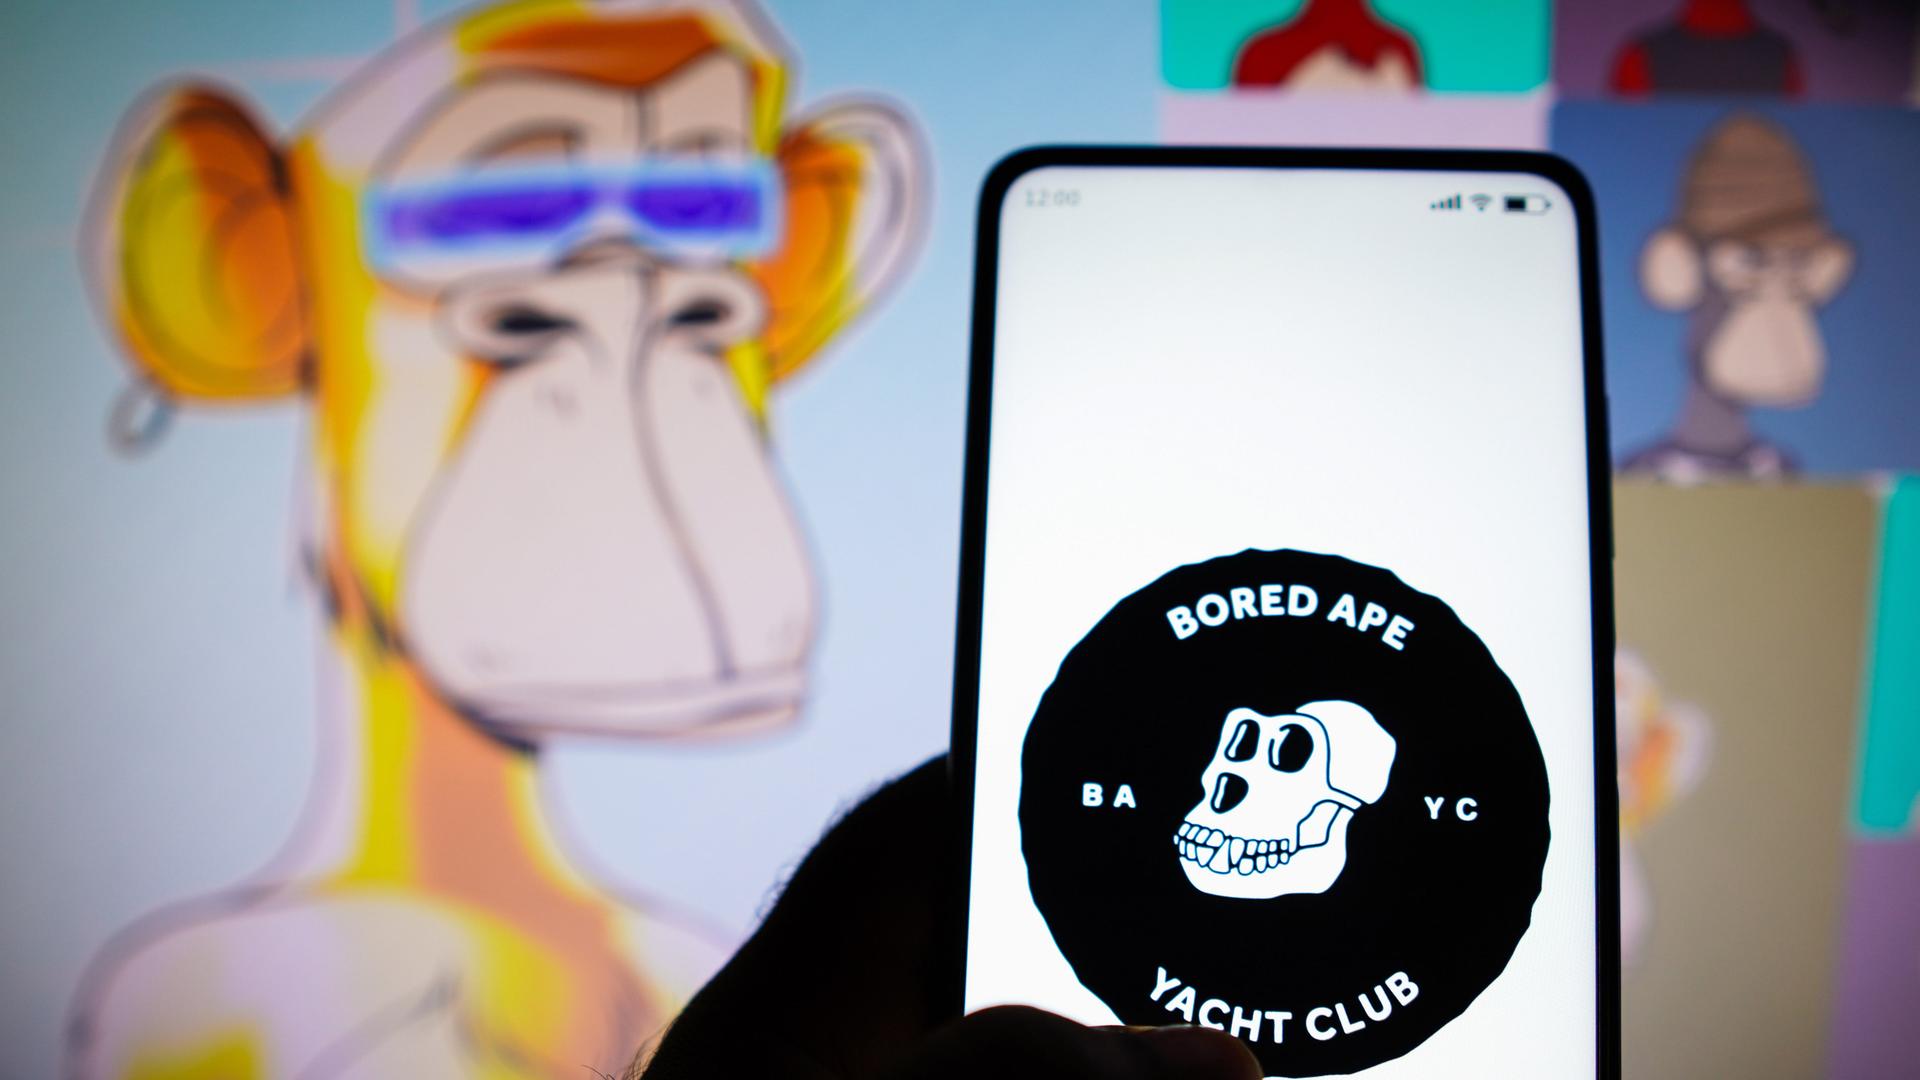 Vor einigen Grafiken mit den gelangweilten Affen hält eine Hand ein Smartphone auf dem das Logo des "Bored Ape Yacht Club" zu sehen ist: ein Affenschädel mit dem Namen und der Abkürzung BAYC.